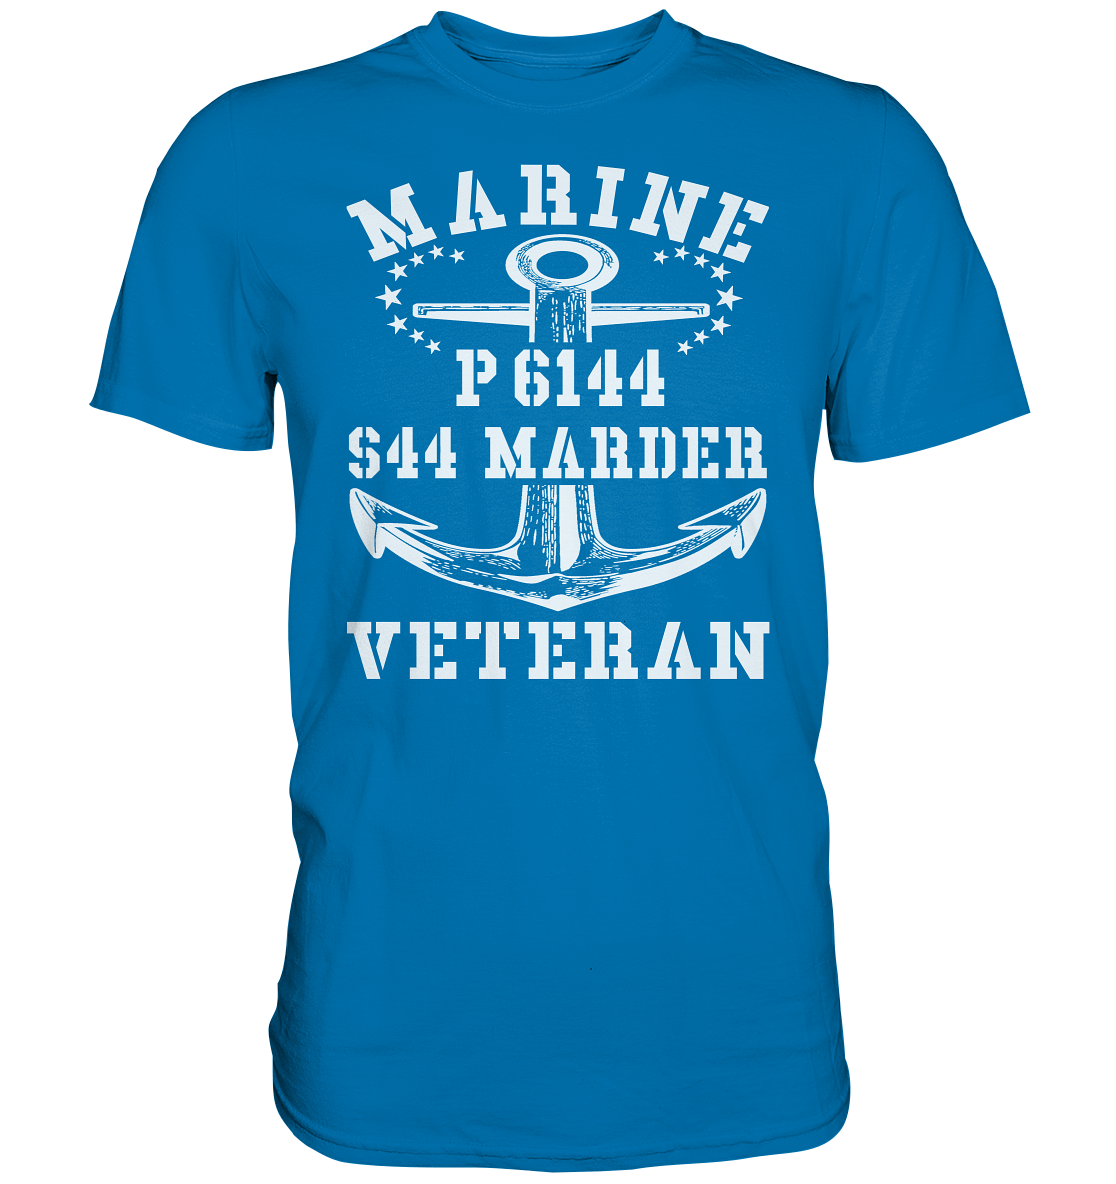 P6144 S44 MARDER Marine Veteran - Premium Shirt